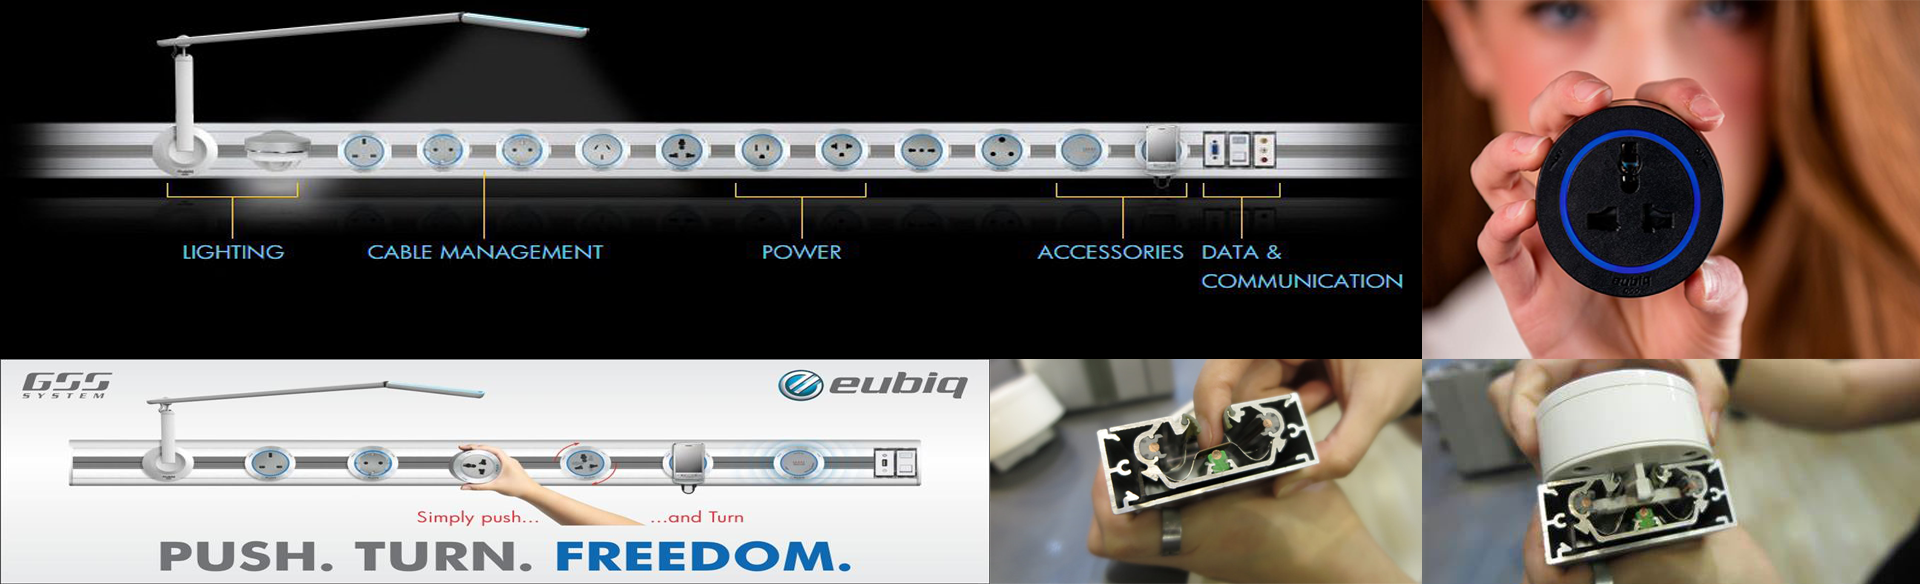  Hệ thống thanh ray tiếp điện âm của Eubiq được thiết kế để dễ dàng lắp đặt và sử dụng, giúp bất kỳ ai cũng có thể tận hưởng sử dụng nguồn điện thuận tiện với mọi người.